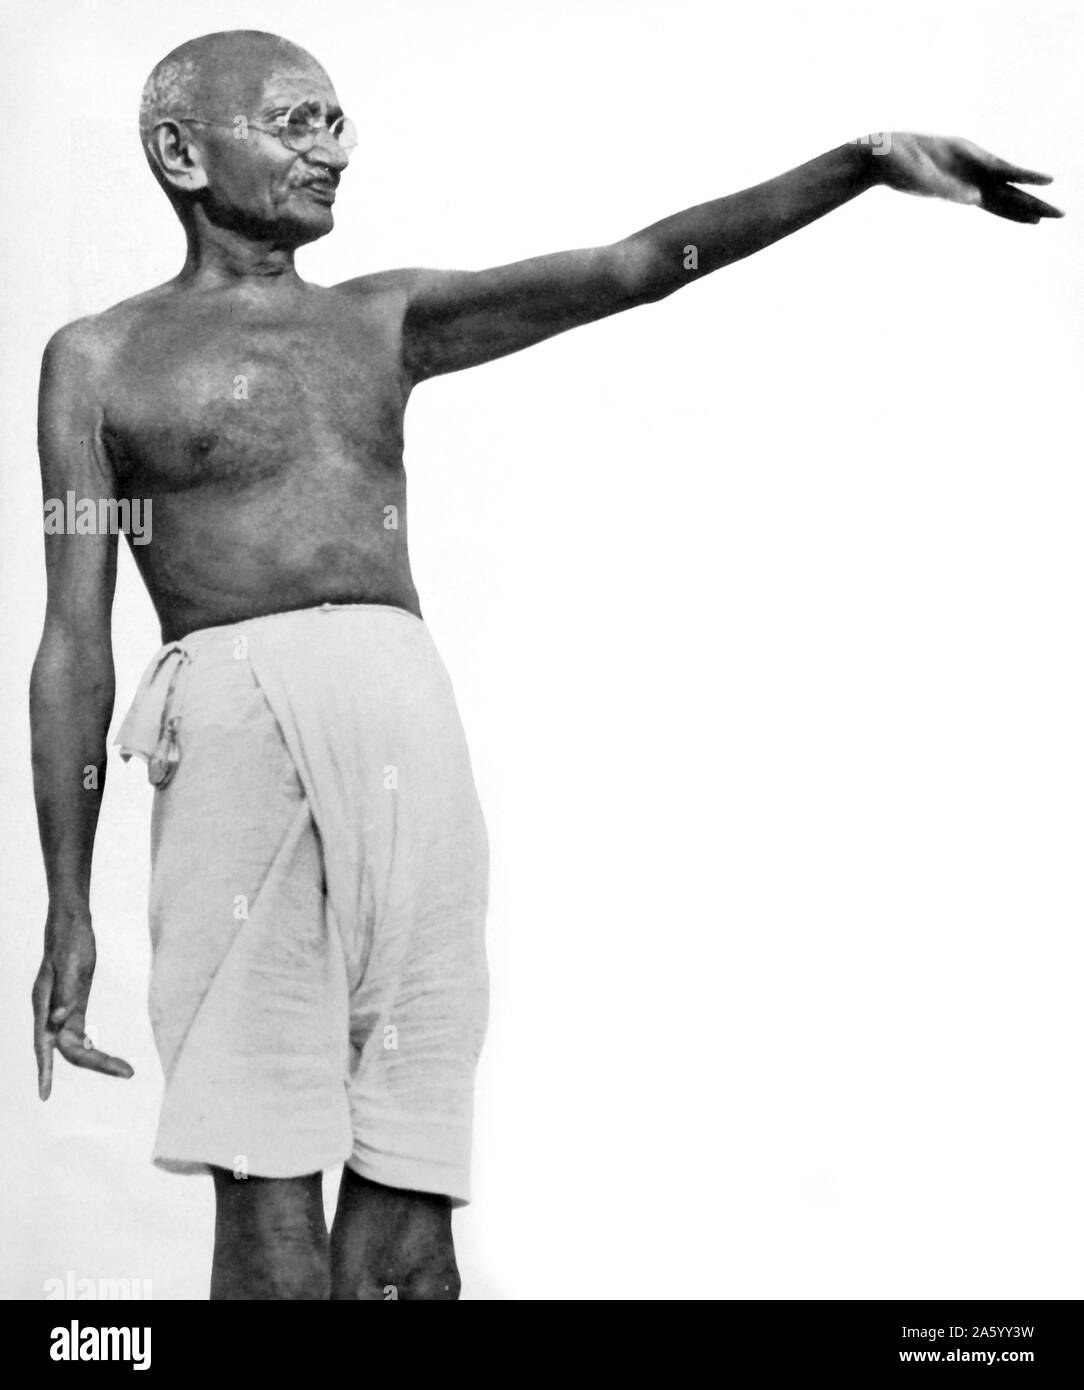 Mohandas Karamchand Gandhi (1869 - 1948), le principal leader de l'indépendance de l'Inde en mouvement a décidé de l'Inde. Emploi de désobéissance civile non-violente, Gandhi a mené l'Inde à l'indépendance et a inspiré des mouvements pour les droits civils et la liberté à travers le monde. Banque D'Images